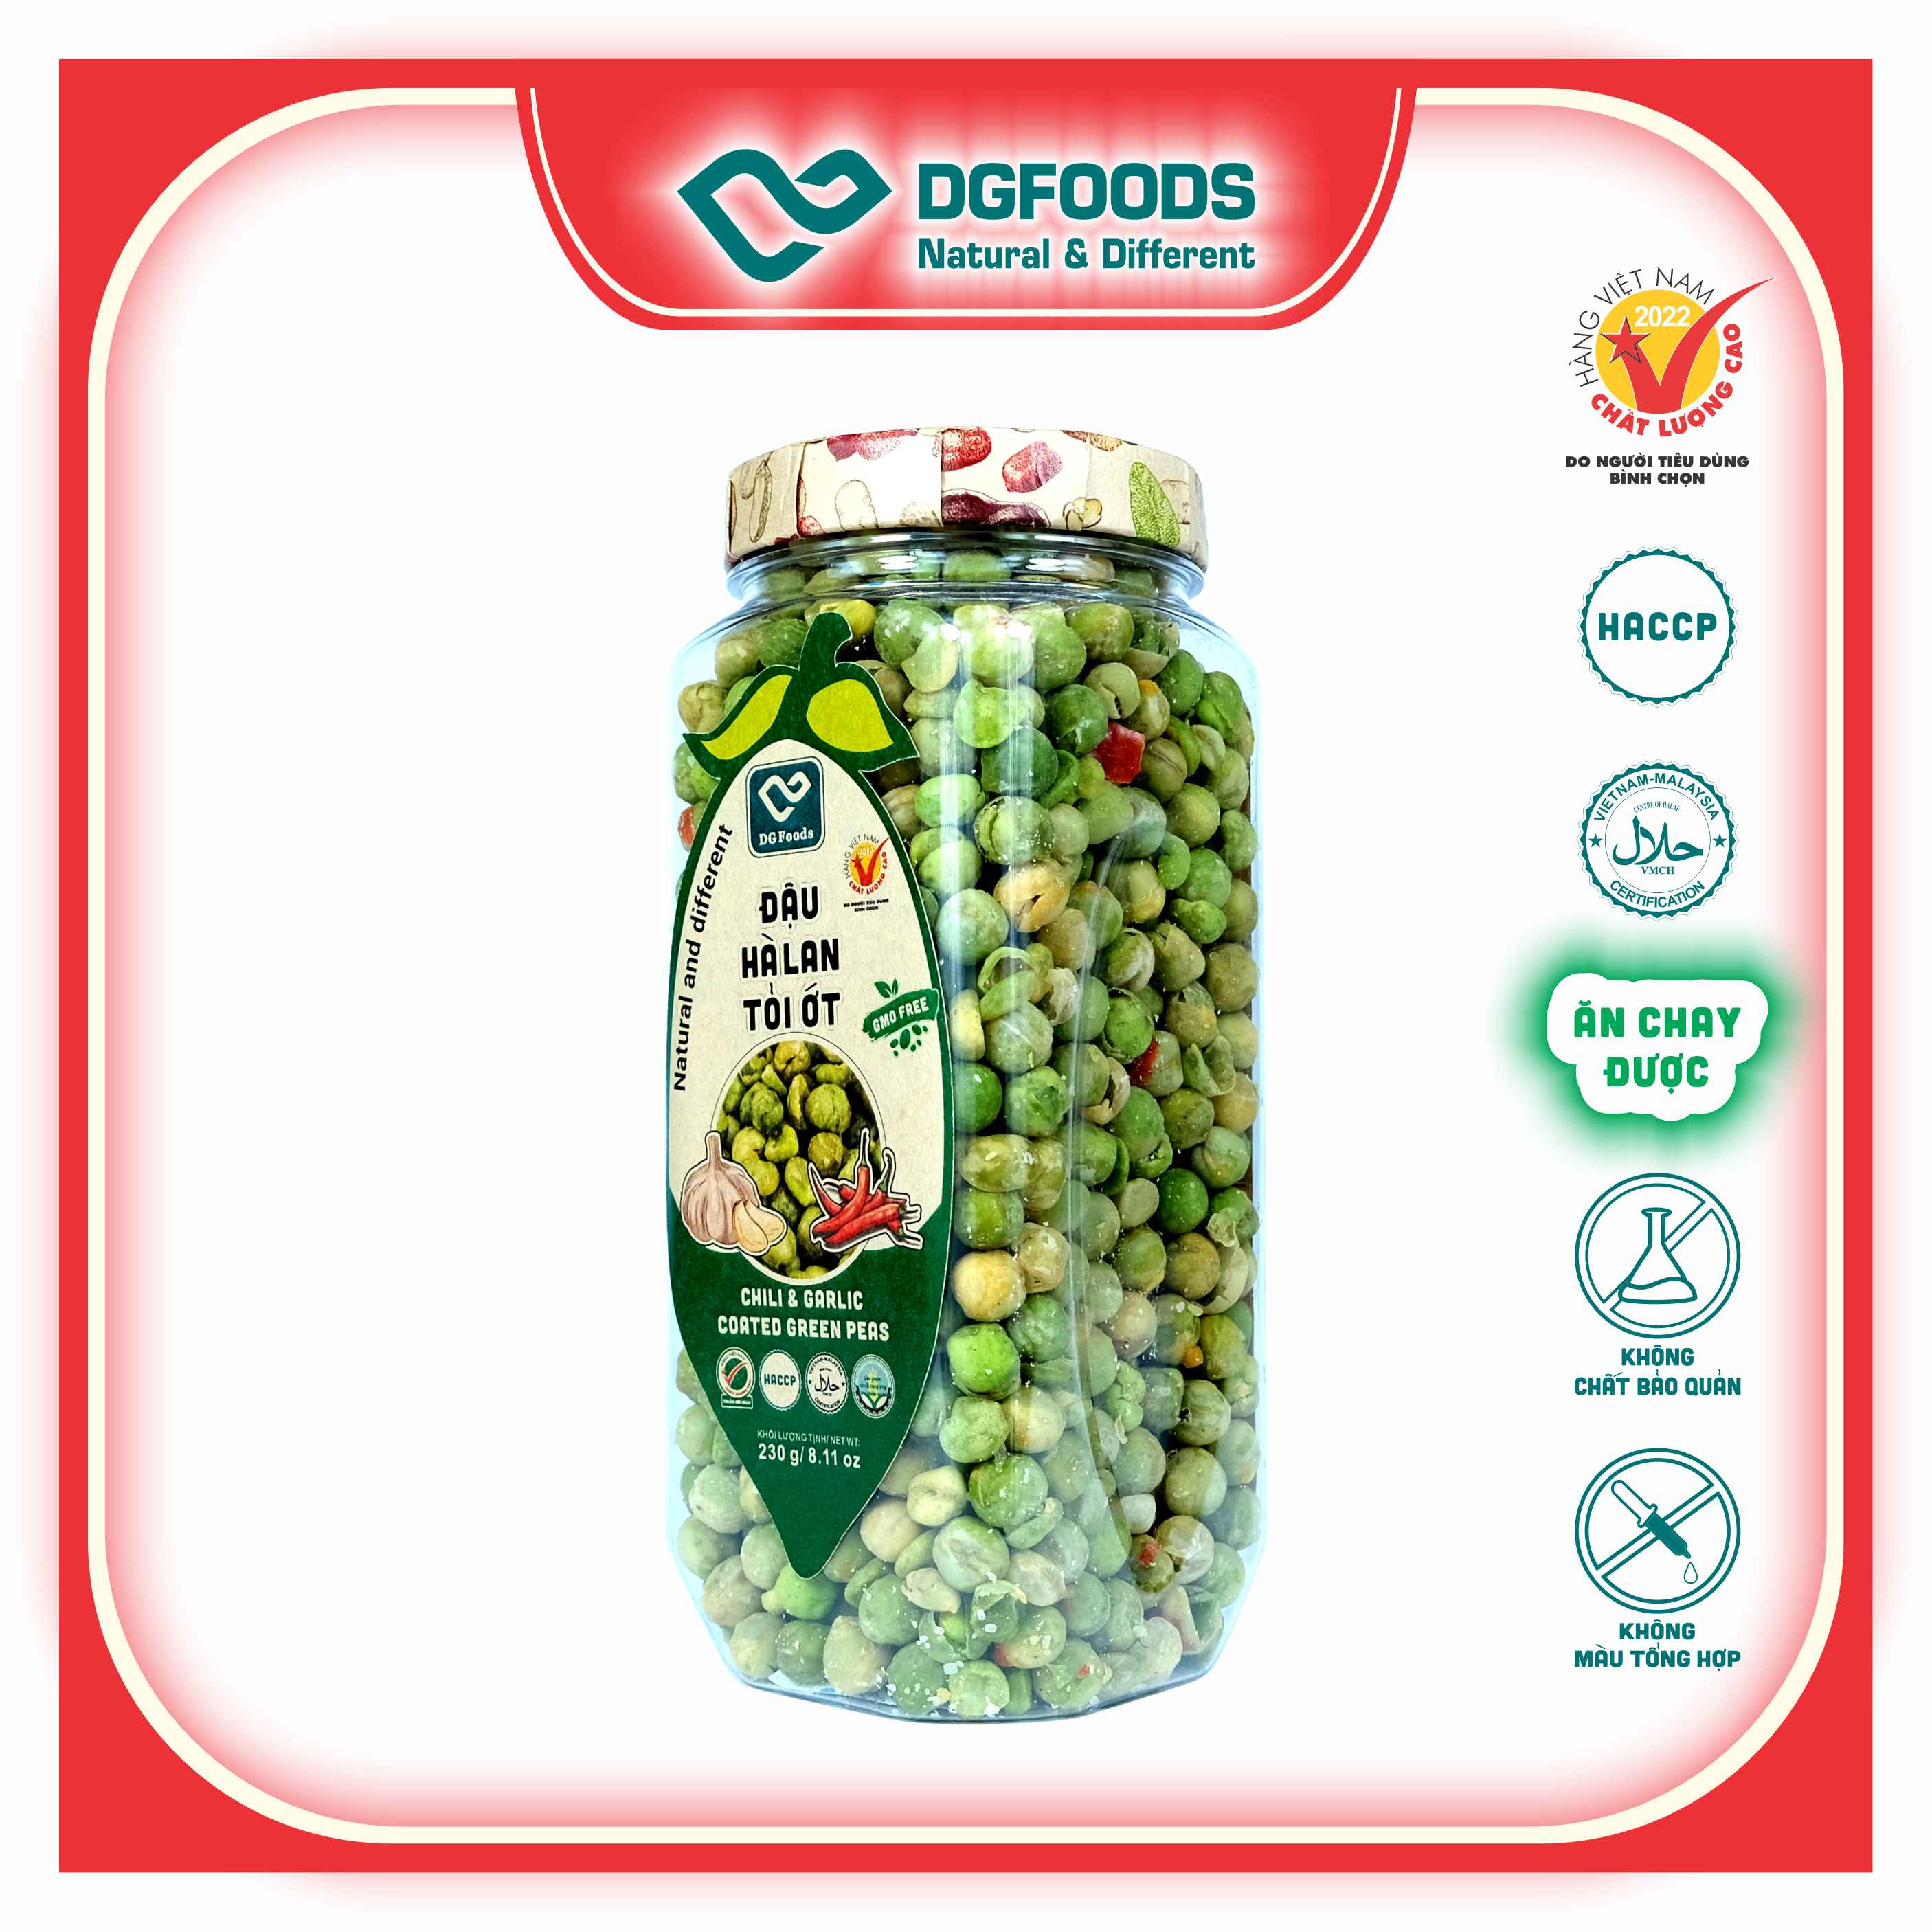 Đậu Hà Lan Tỏi Ớt DGfoods 230g/ Chili &amp; garlic coated green peas/ HVNCLC, Haccp, Halal, Ăn chay, Ăn kiêng, Đặc sản Cần Thơ